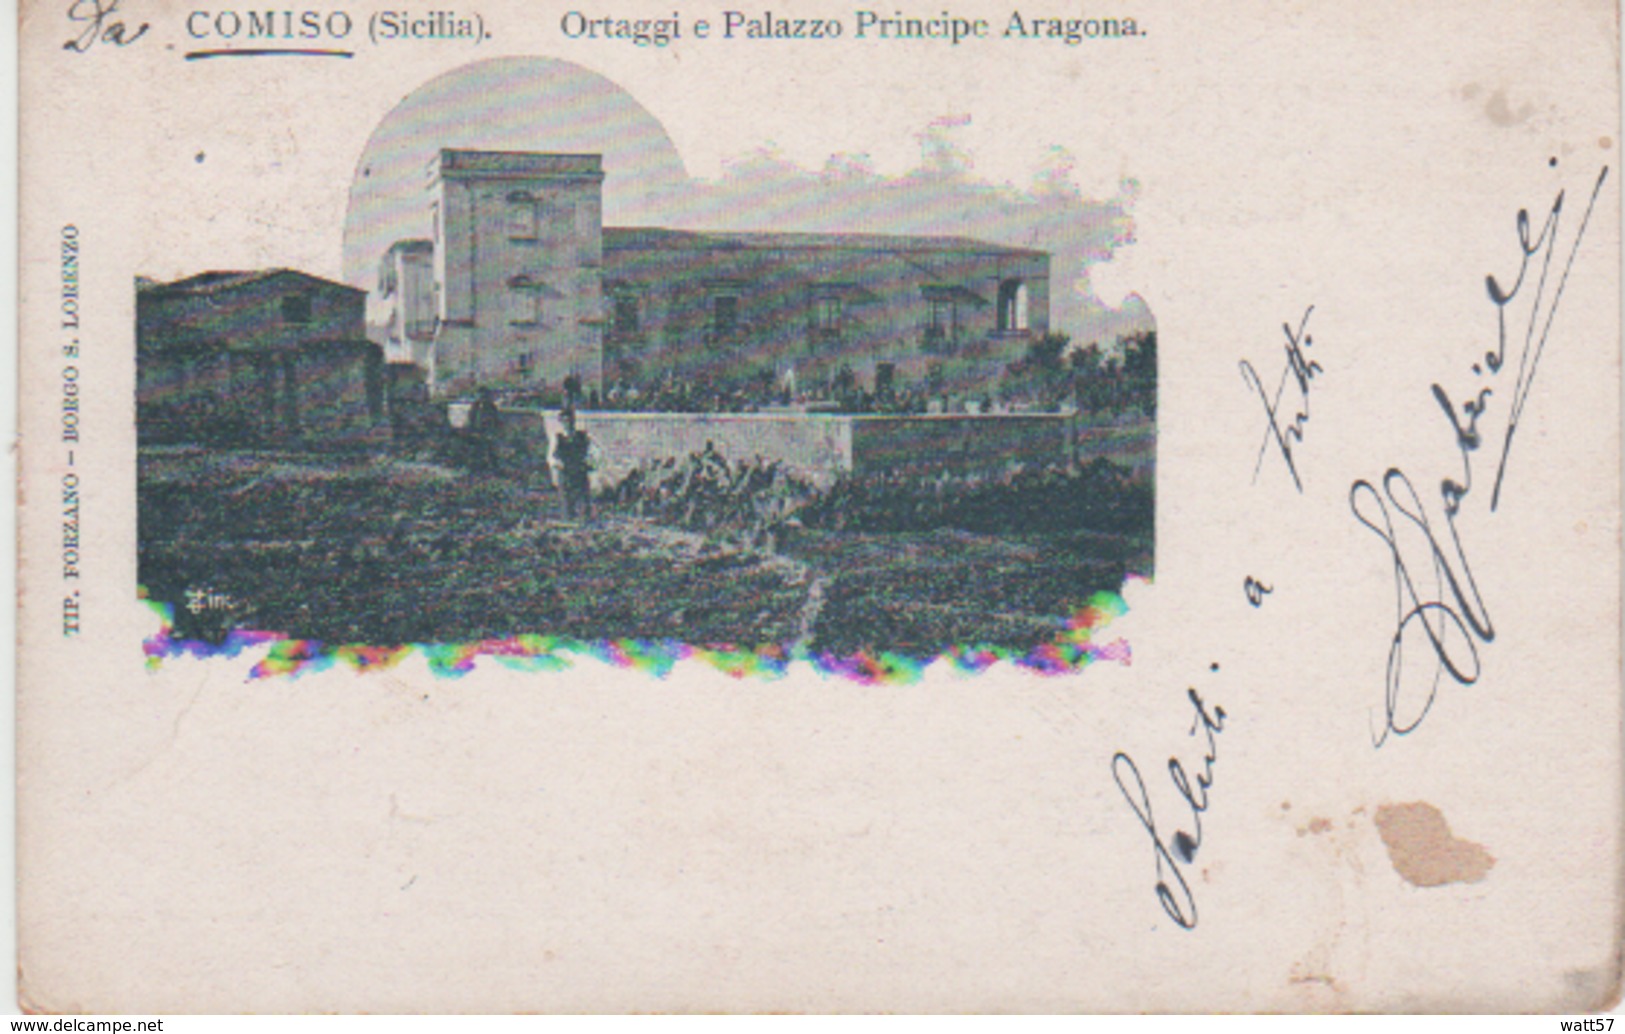 Comiso Ortaggi E Palazzo Principe Aragona - Ragusa